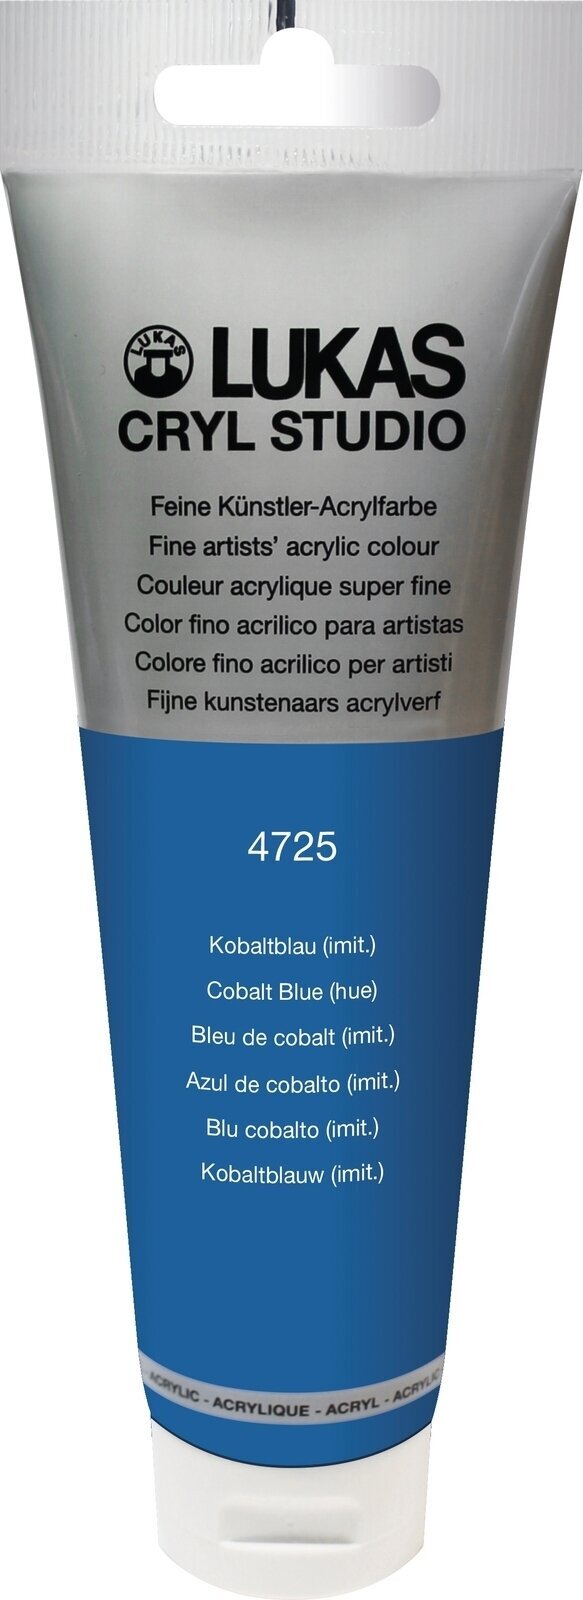 Acrylfarbe Lukas Cryl Studio Acrylic Paint Plastic Tube Acrylfarbe Cobalt Blue Hue 125 ml 1 Stck